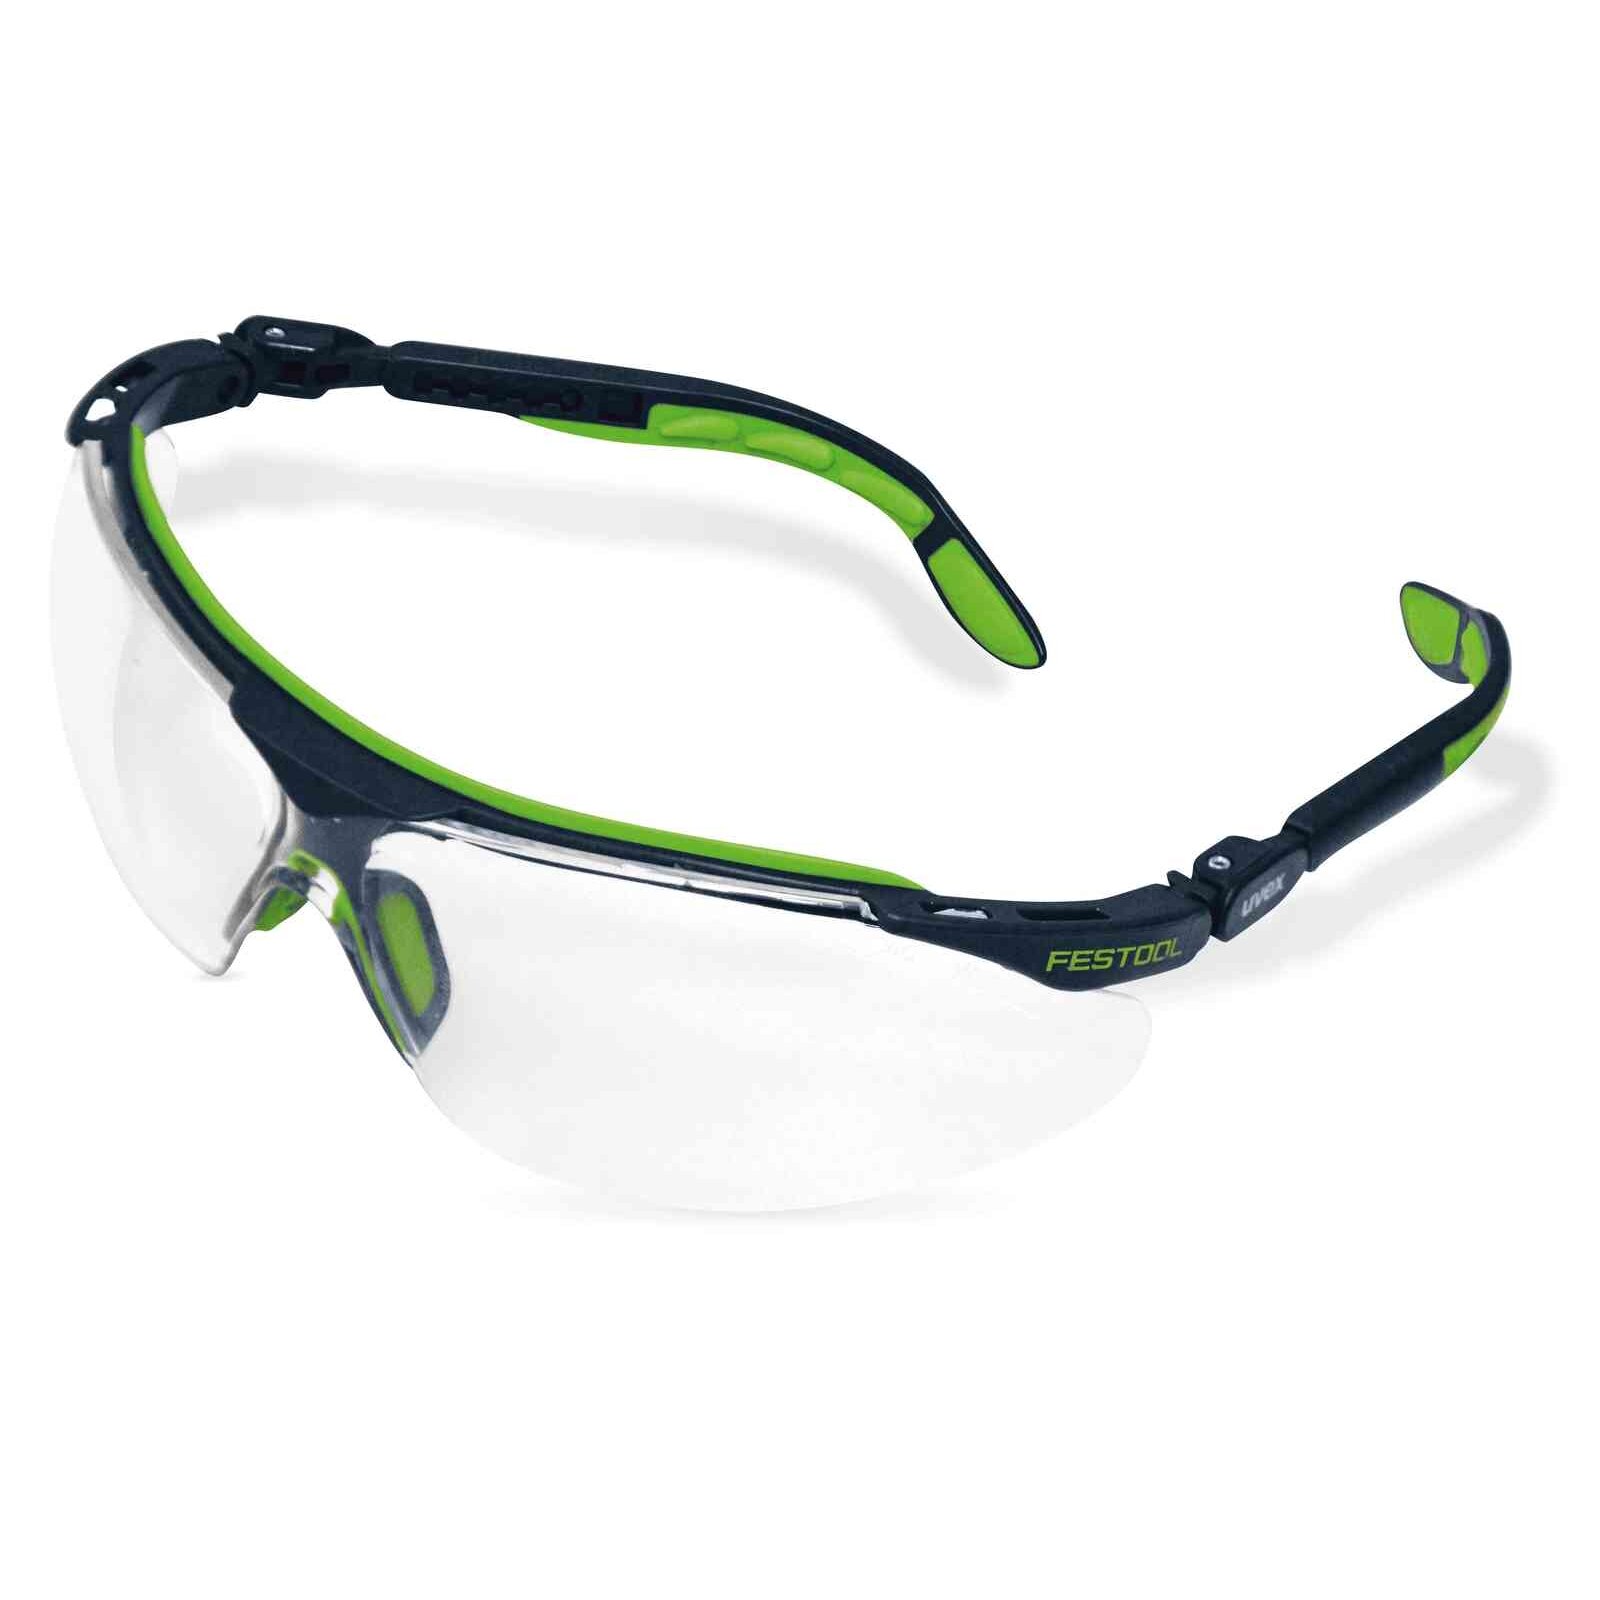 Специальные защитные очки. Очки защитные Uvex lt400. Uvex i-vo очки. Очки защитные Uvex d90766. Очки Festool защитные.